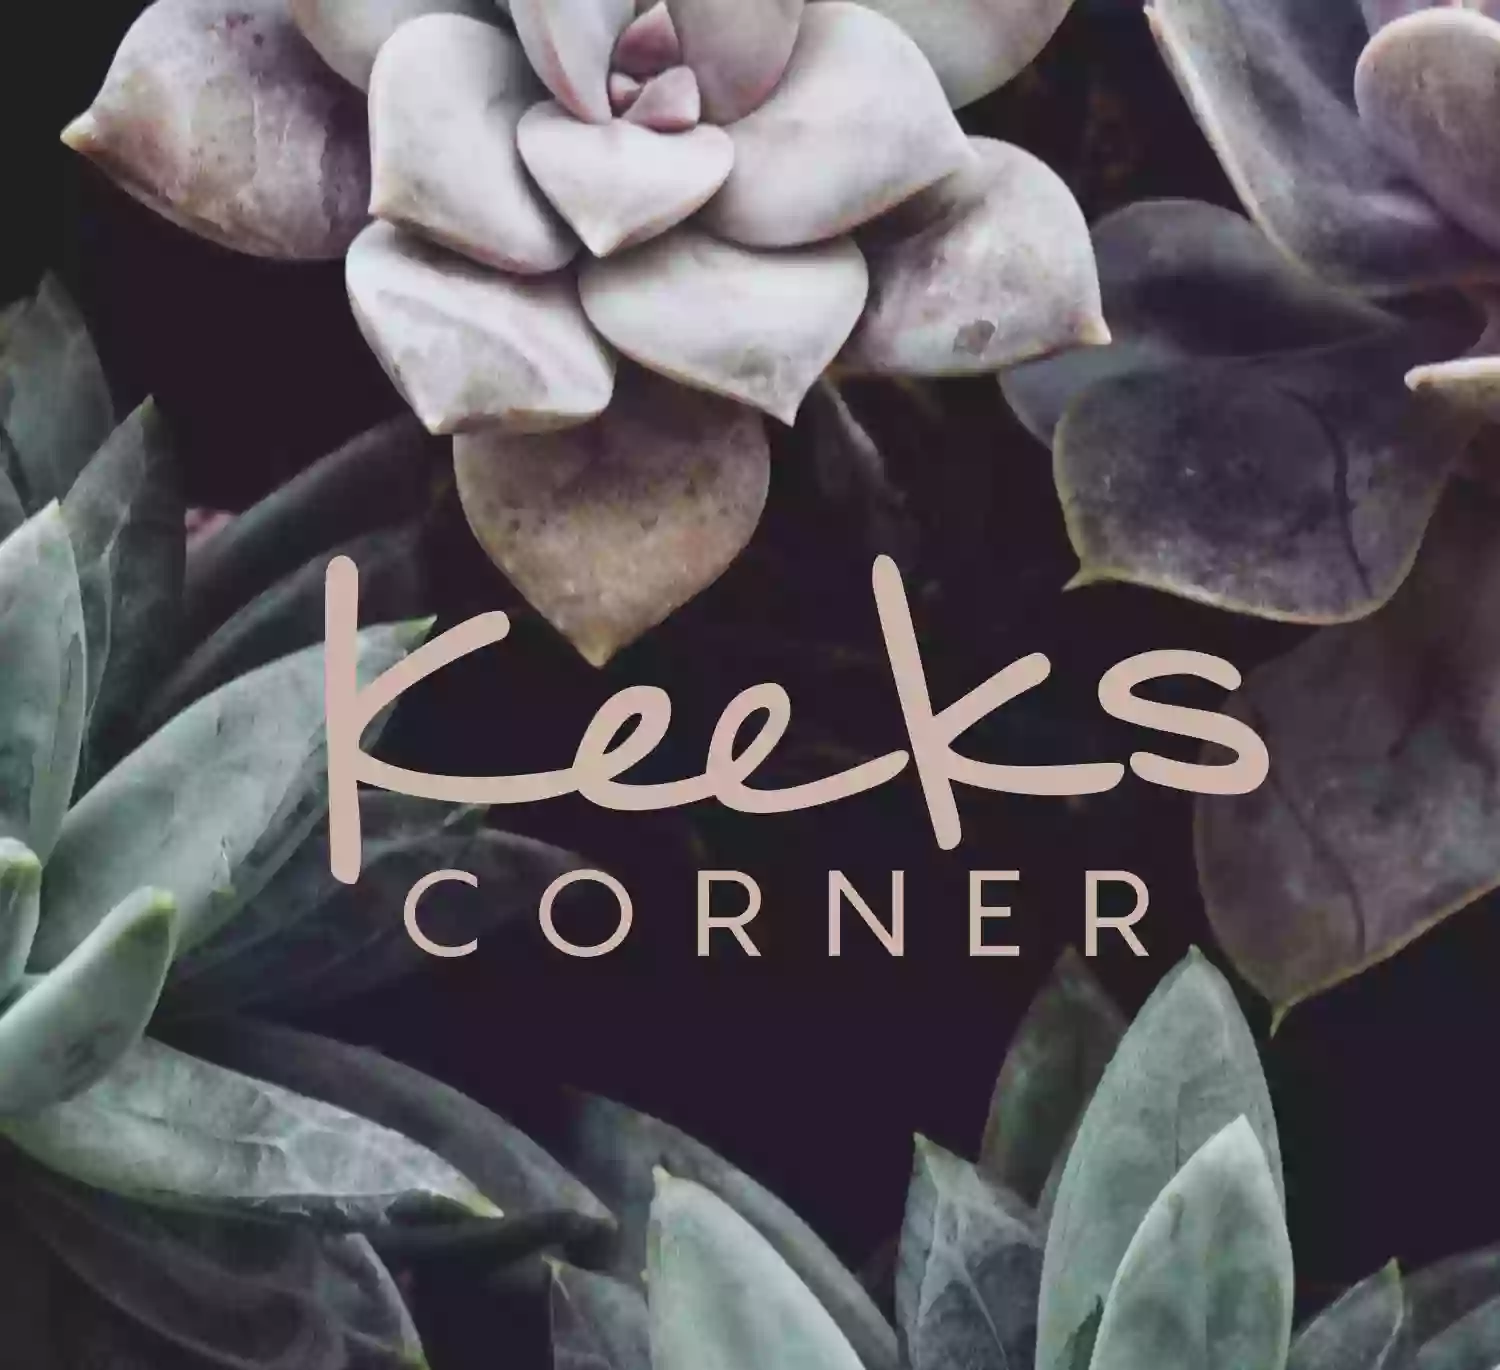 Keeks Corner